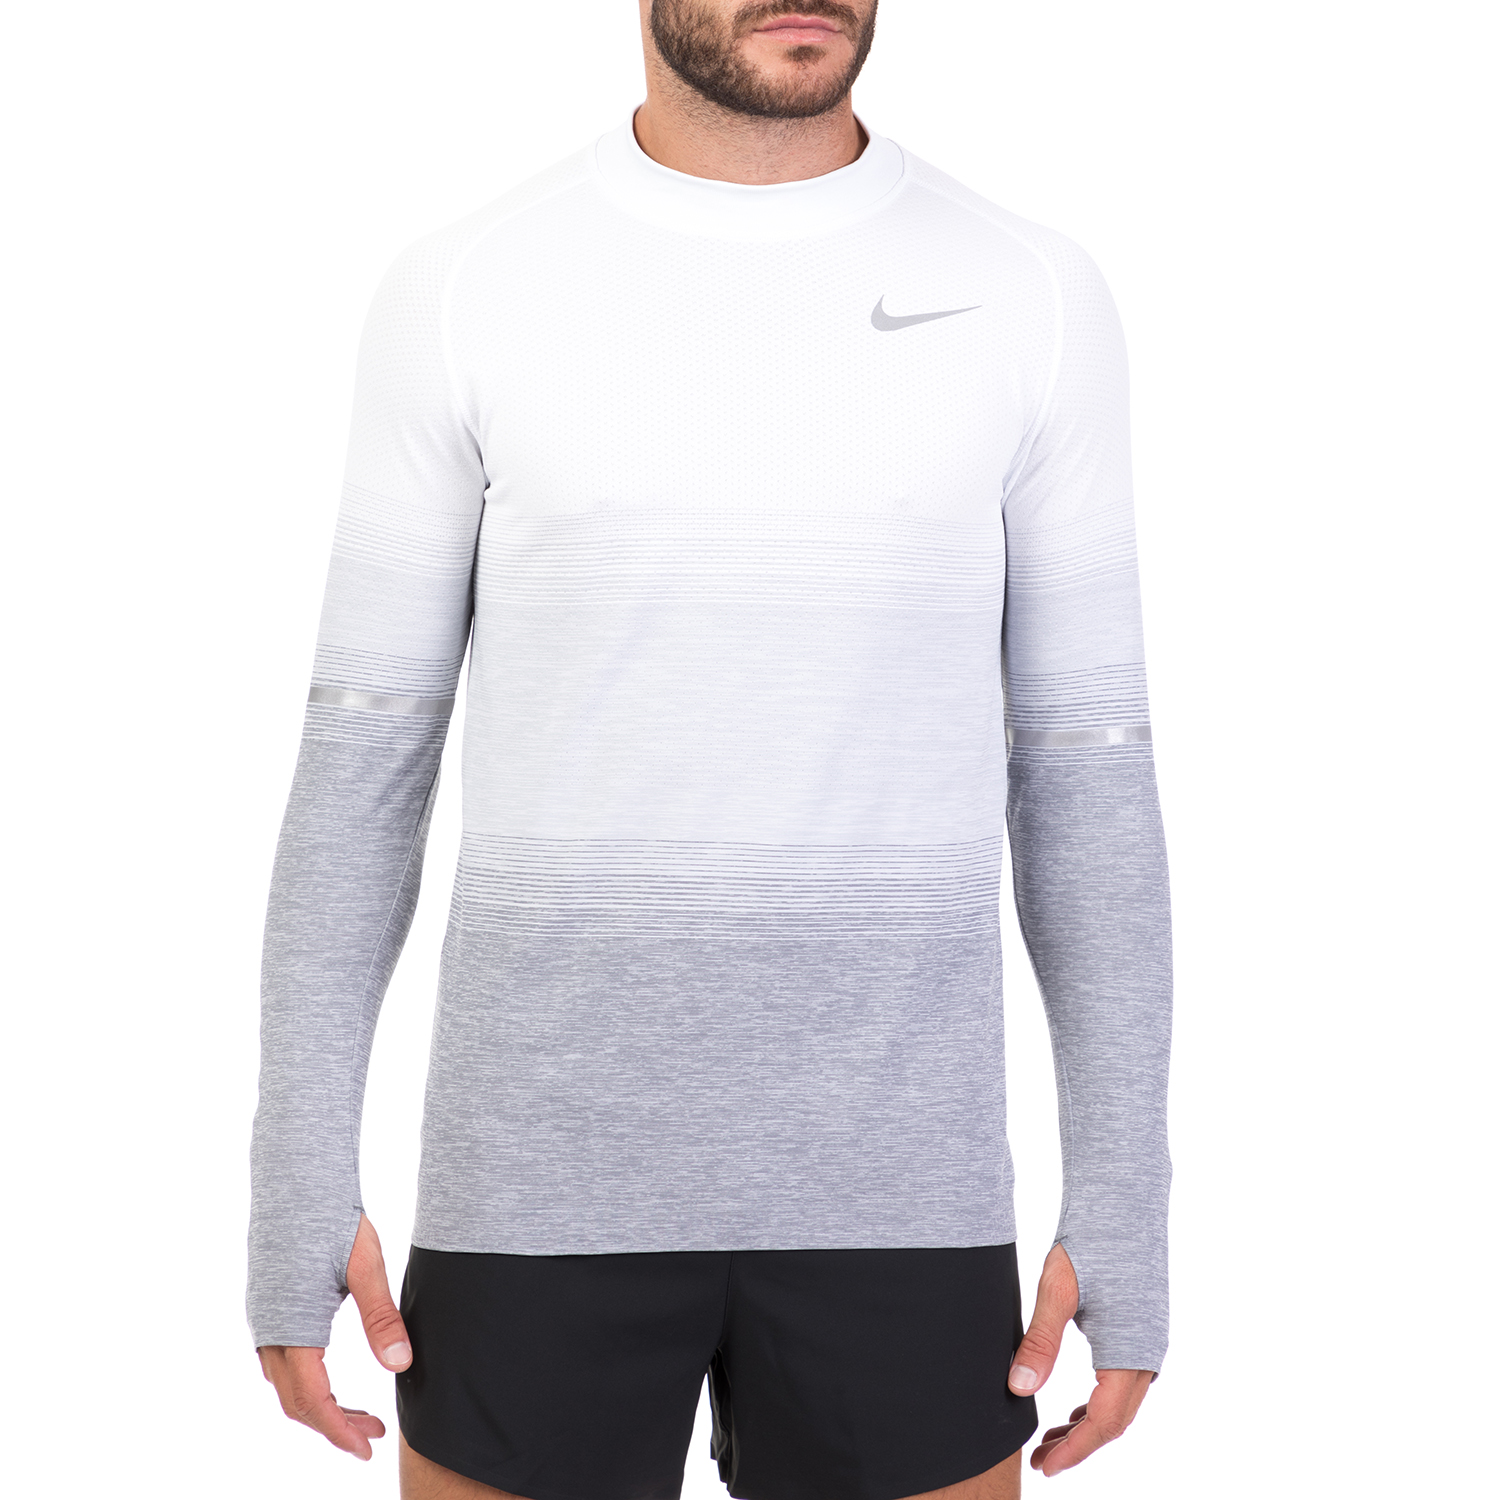 NIKE Ανδρική αθλητική μακρυμάνικη μπλούζα Nike DF KNIT TOP LS MOCK γκρι-ασημί